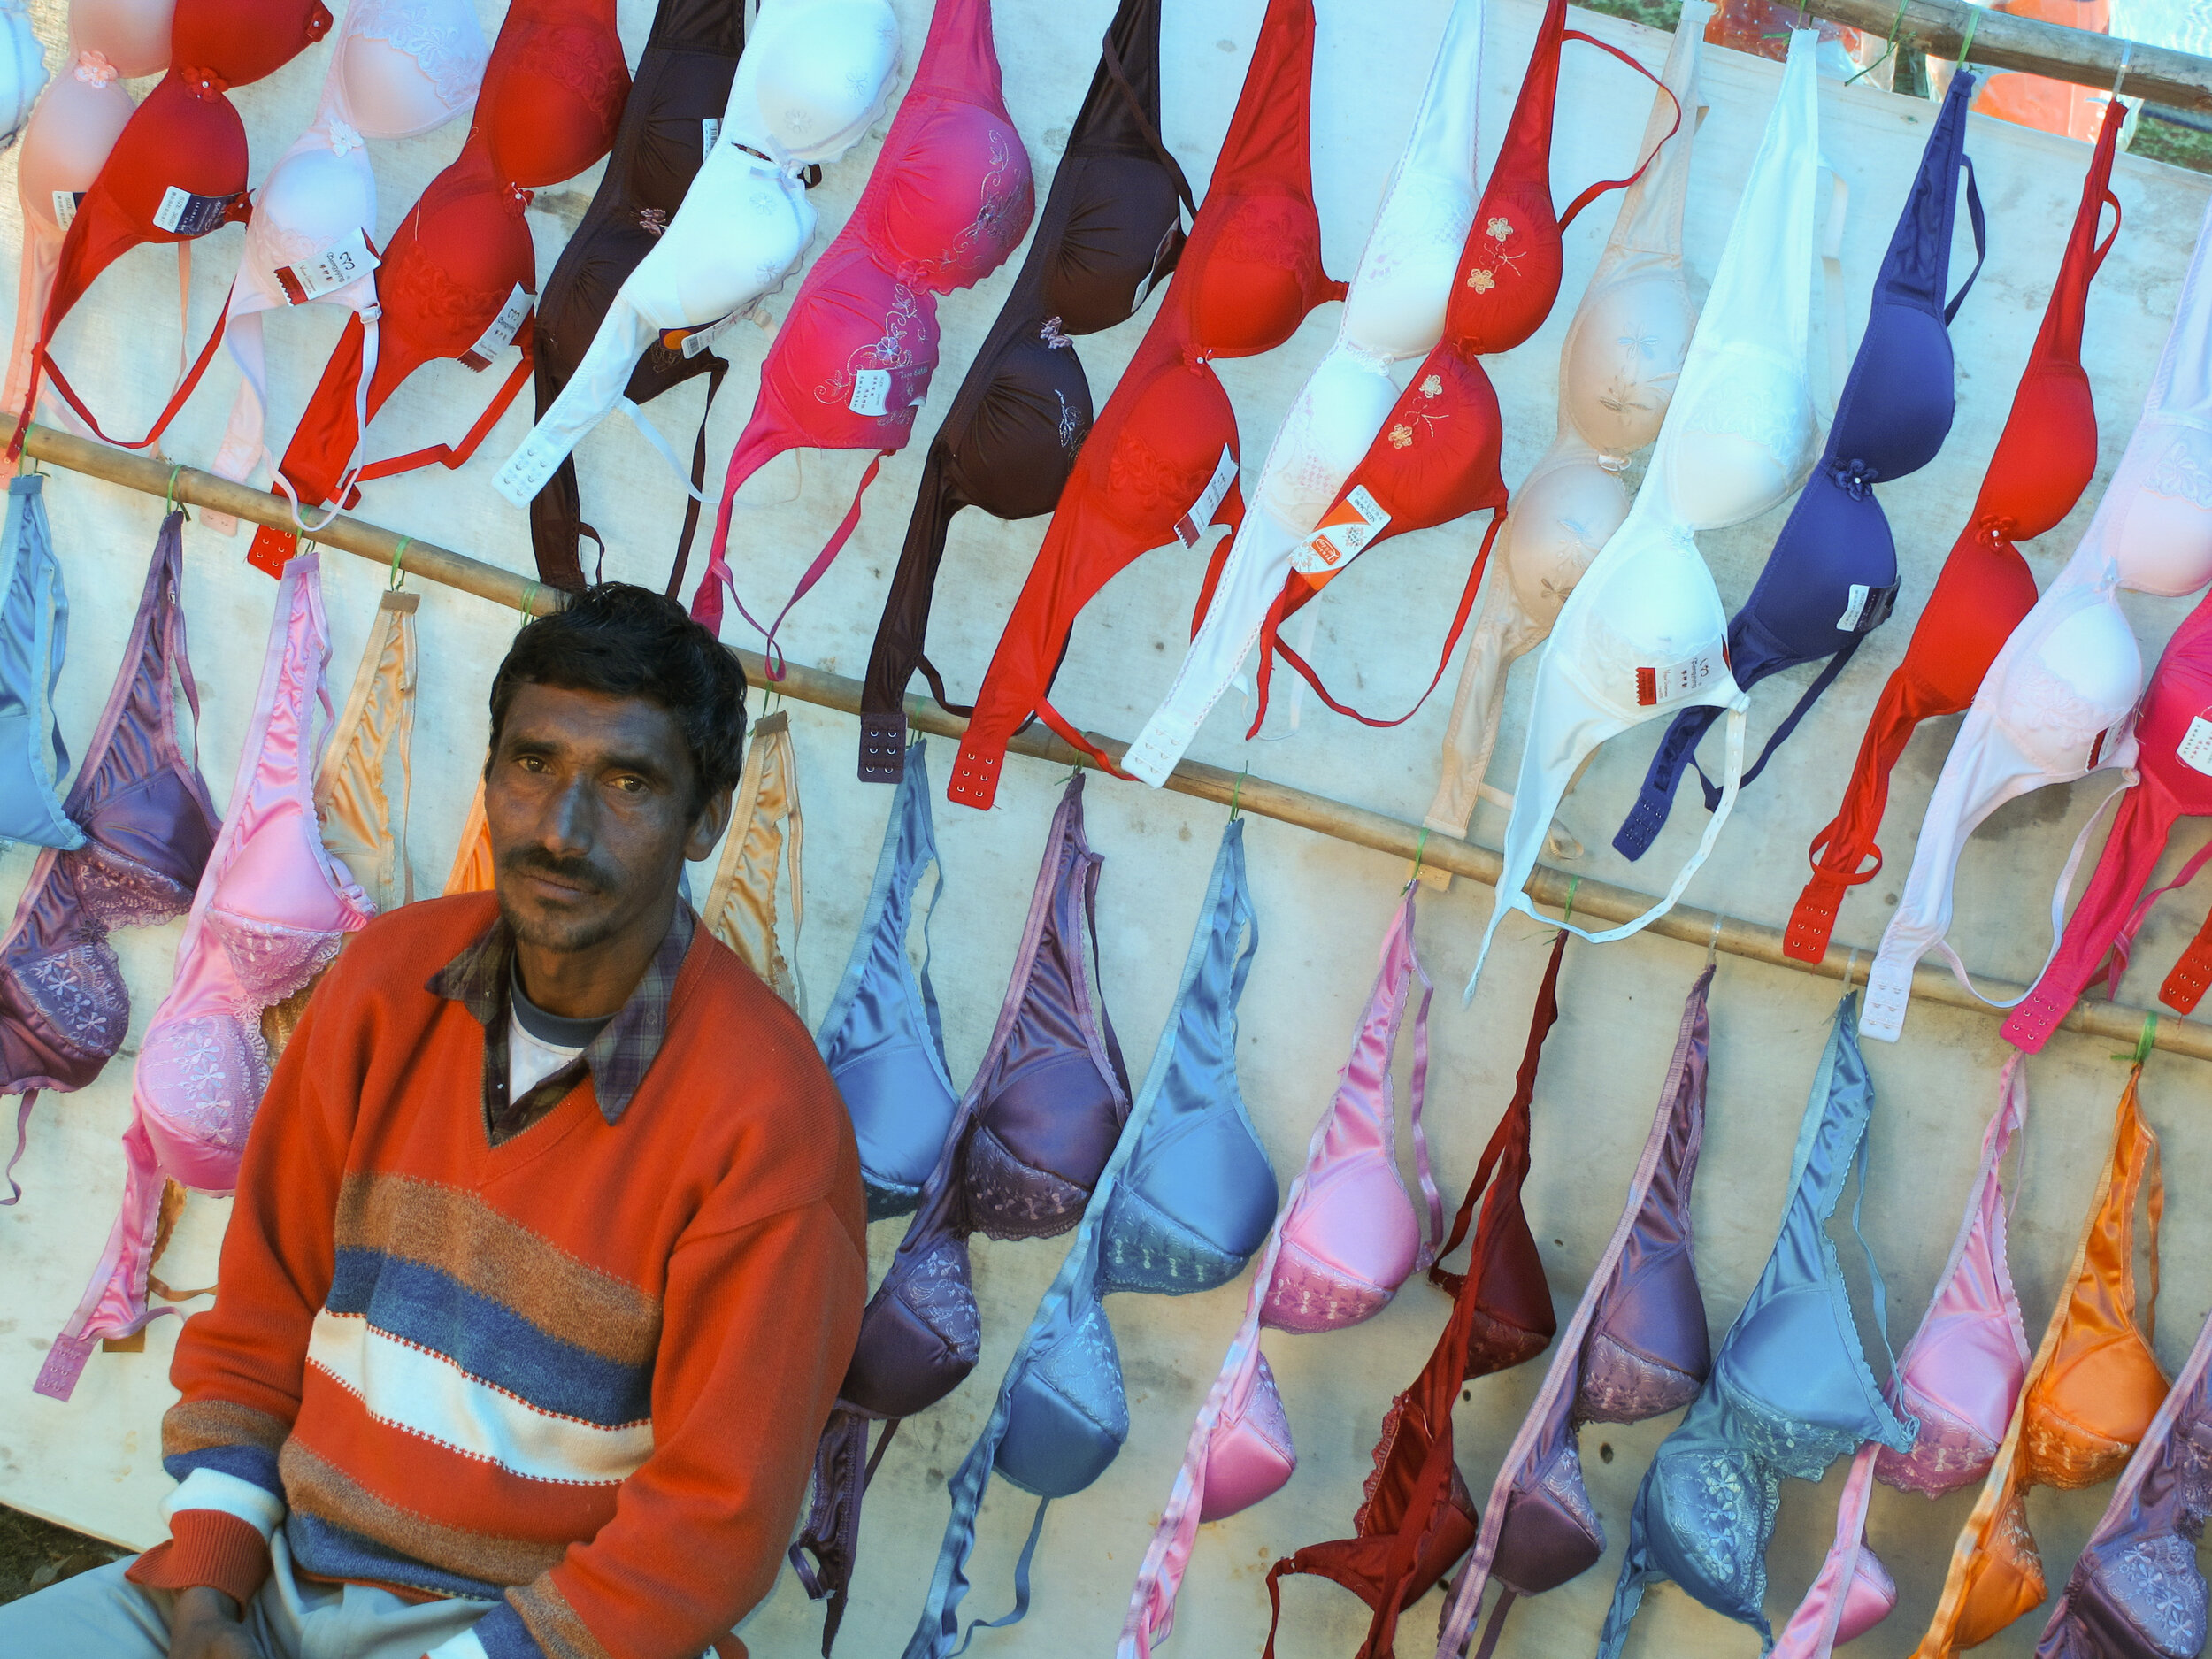 Vendor in India 2011